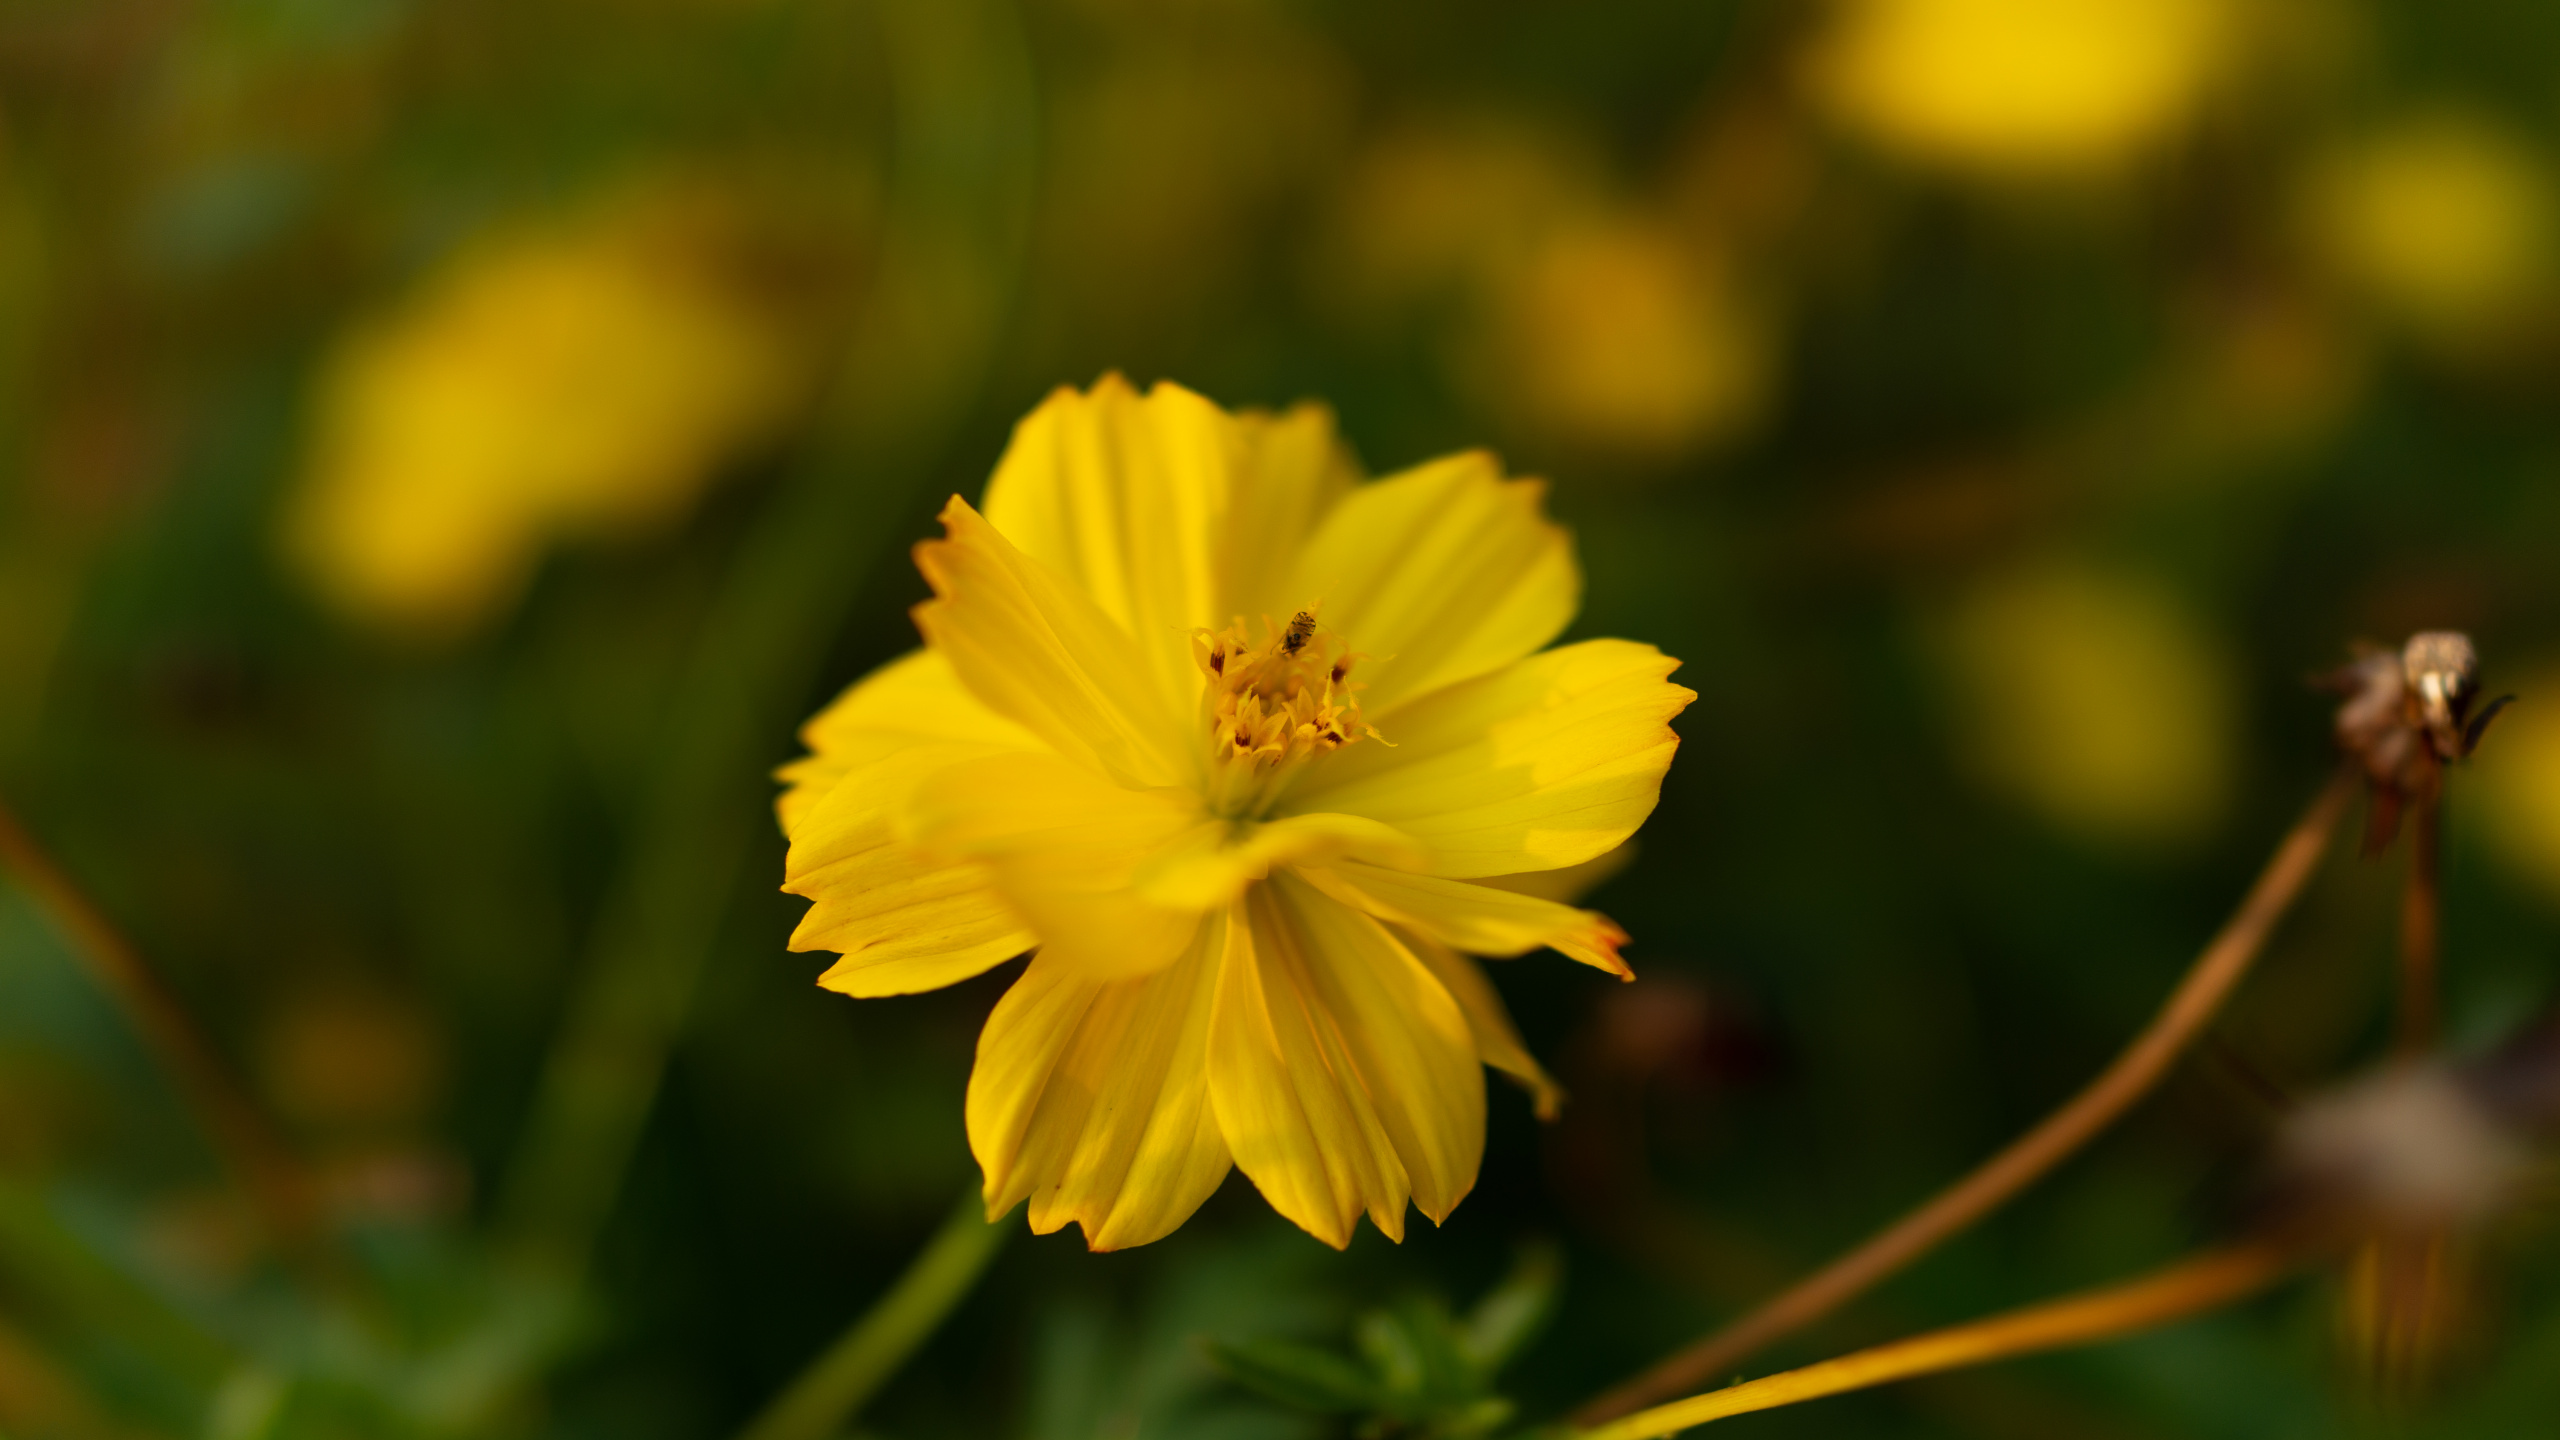 Yellow Flower in Tilt Shift Lens. Wallpaper in 2560x1440 Resolution